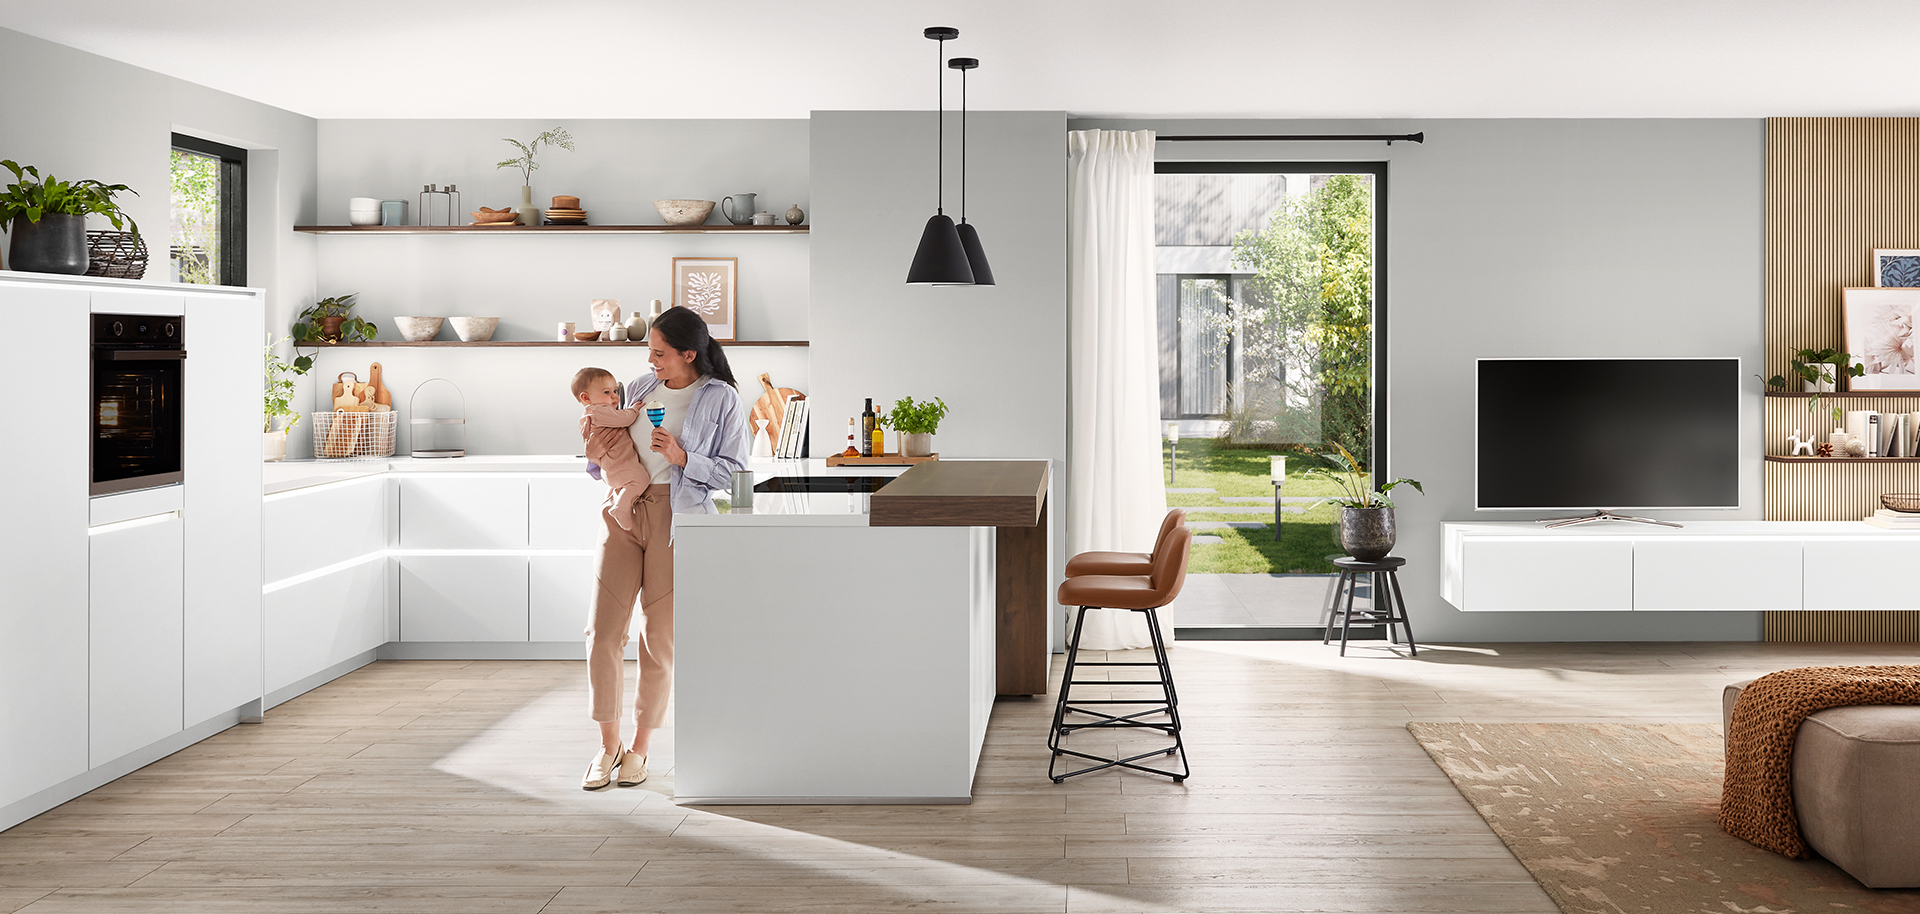 Interior de cocina moderna con un diseño limpio y minimalista que incluye gabinetes blancos, una isla central y una joven madre sosteniendo amorosamente a su hijo.